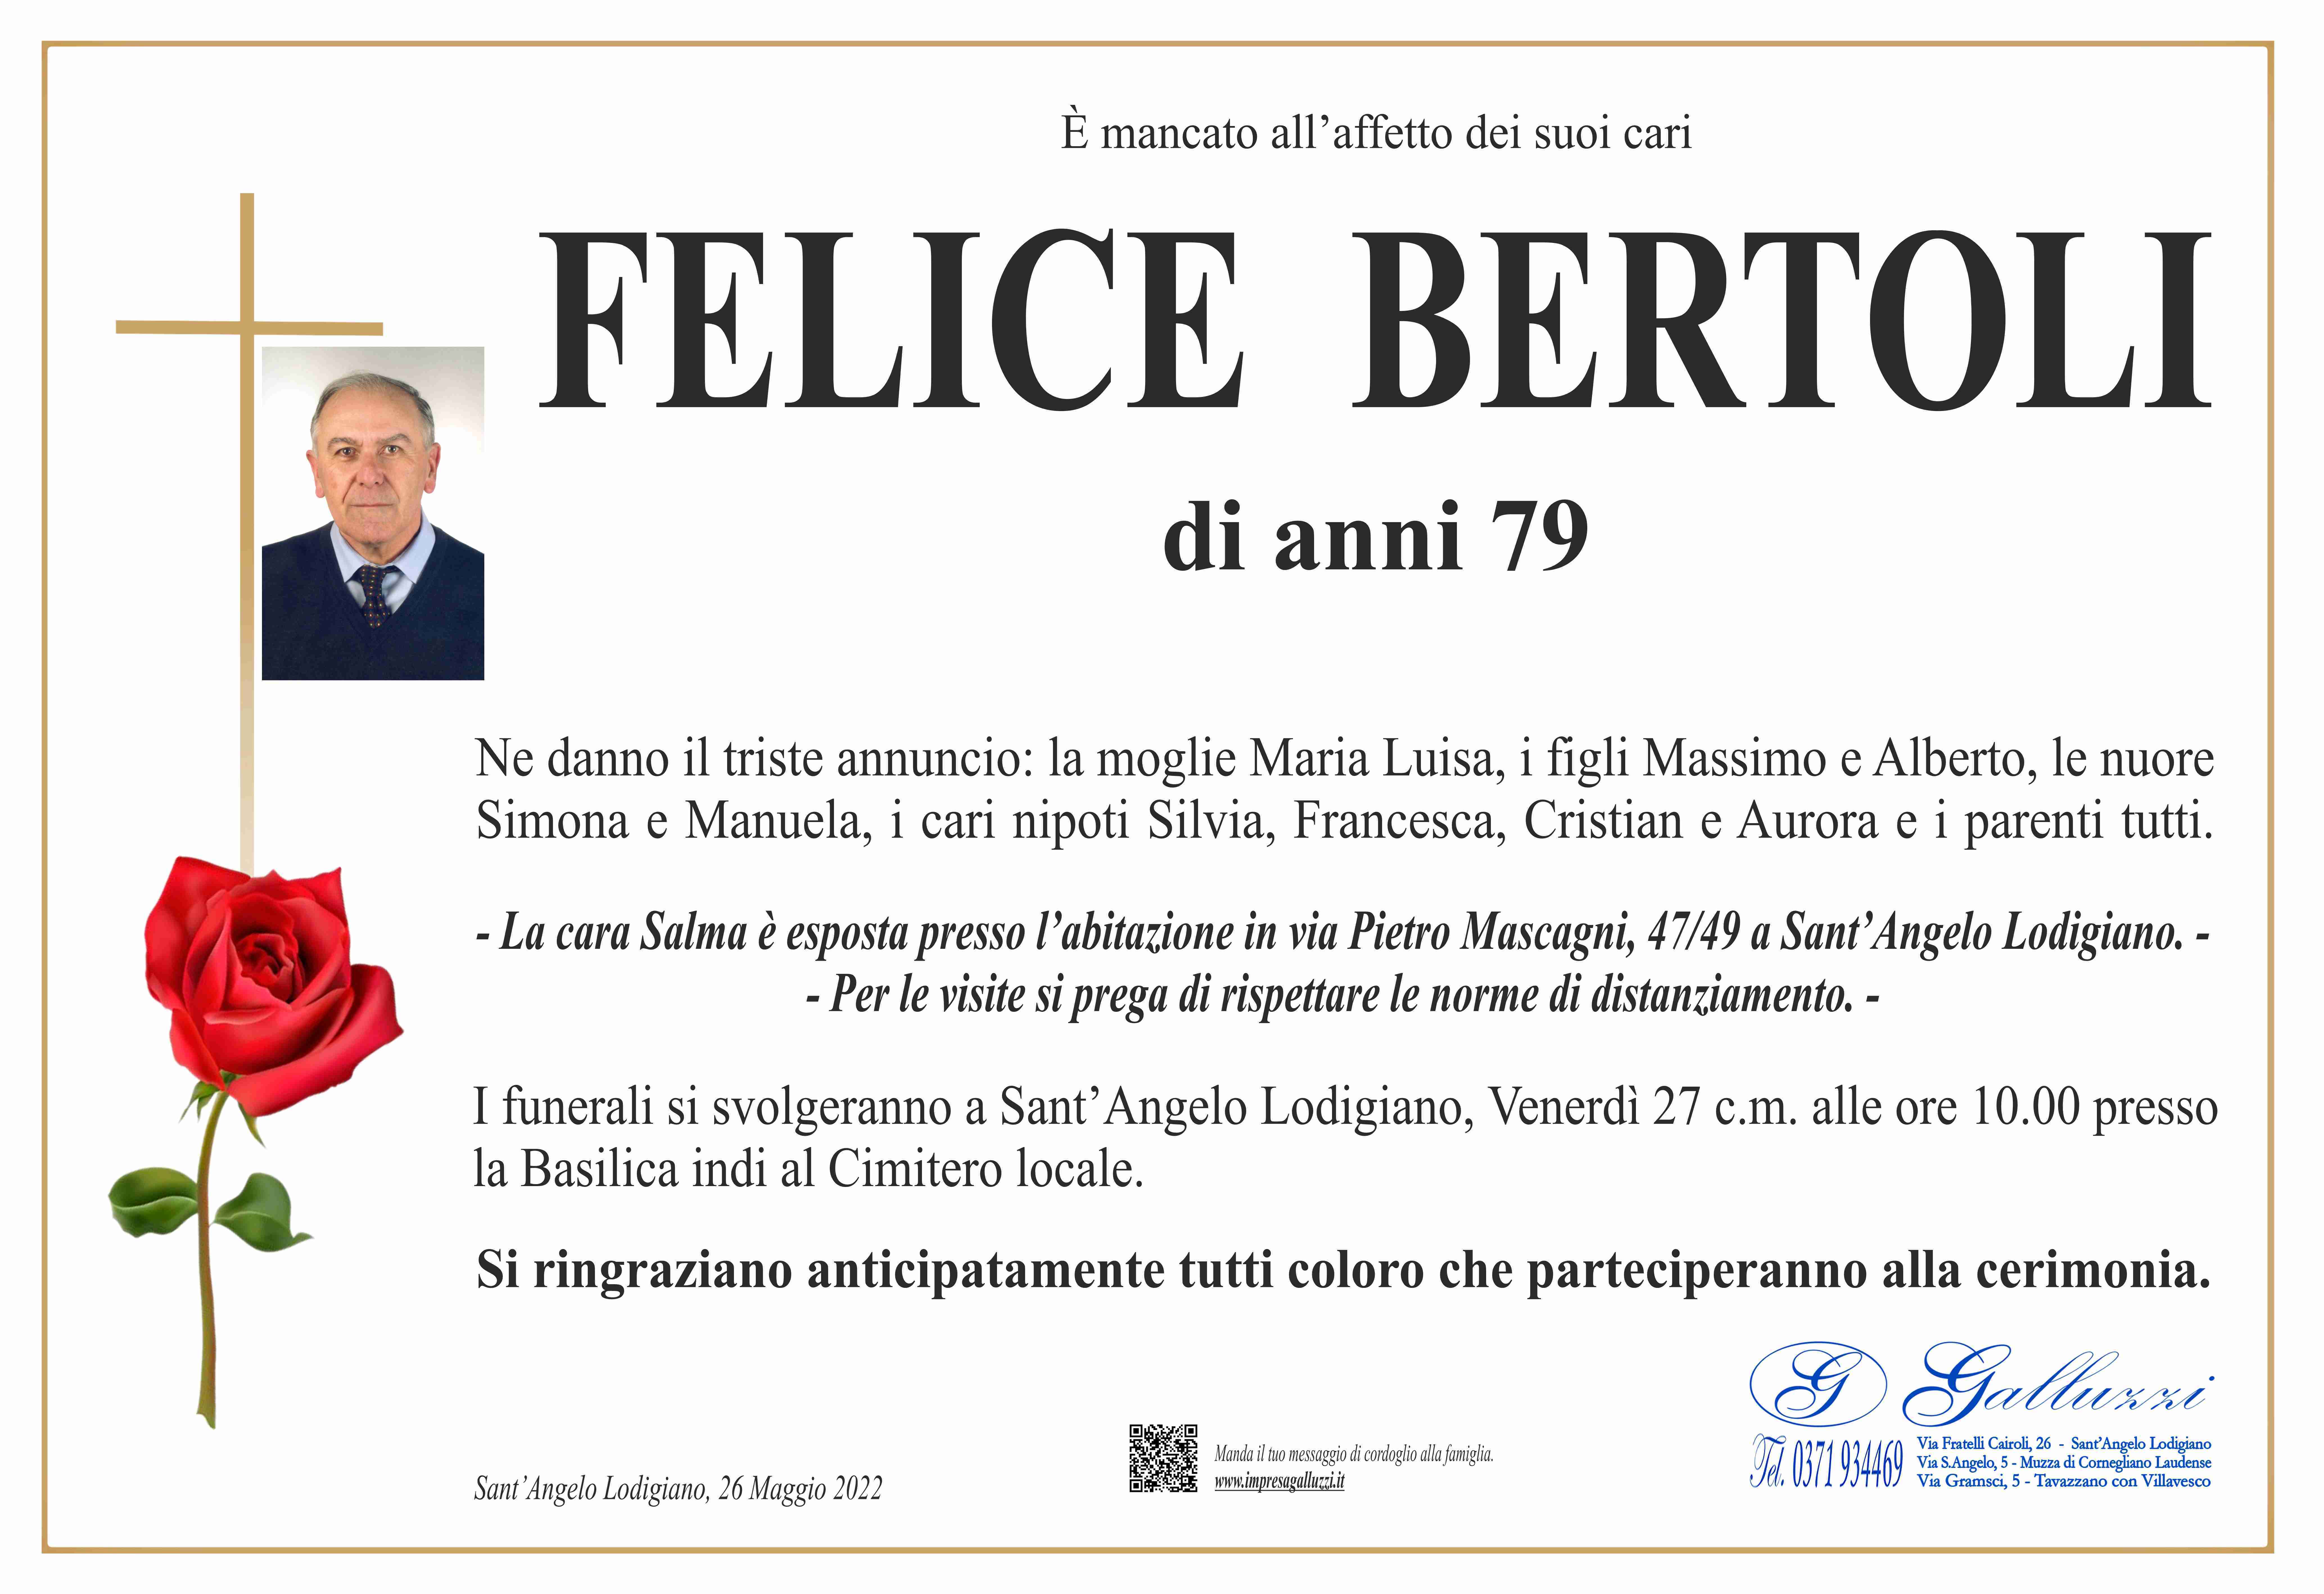 Felice Bertoli